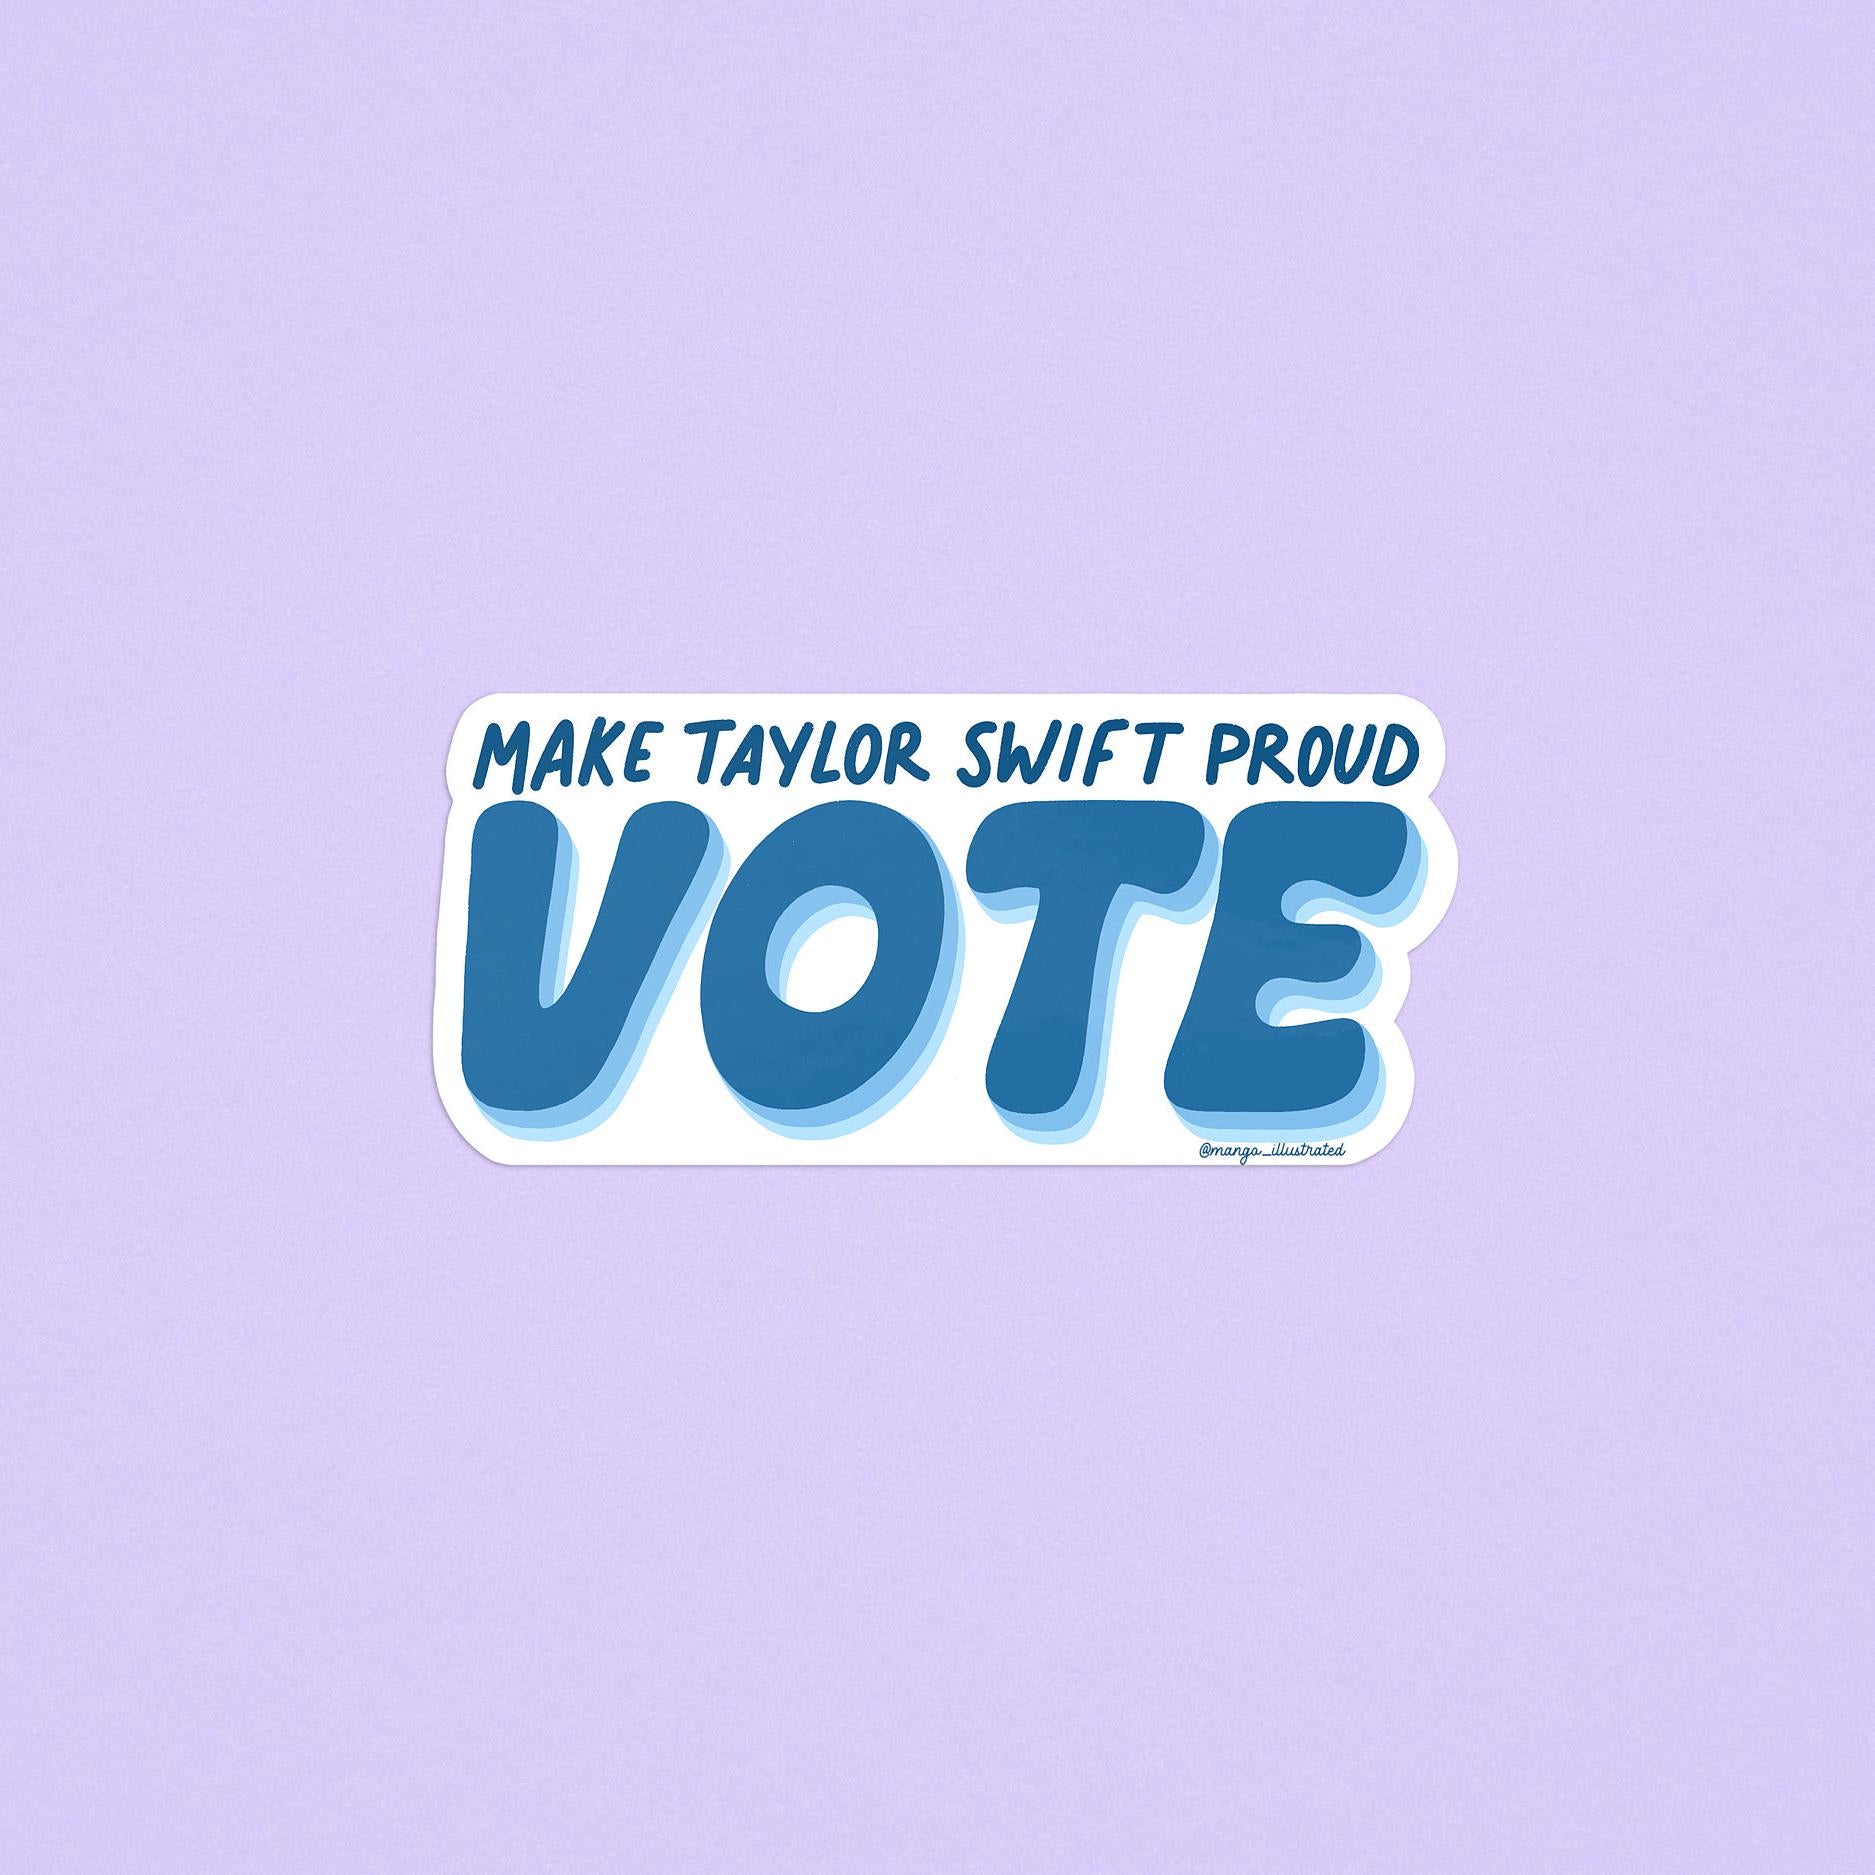 Make Taylor proud VOTE sticker, Swiftie sticker, election sticker, Taylor Swift voting inspired sticker, waterproof sticker